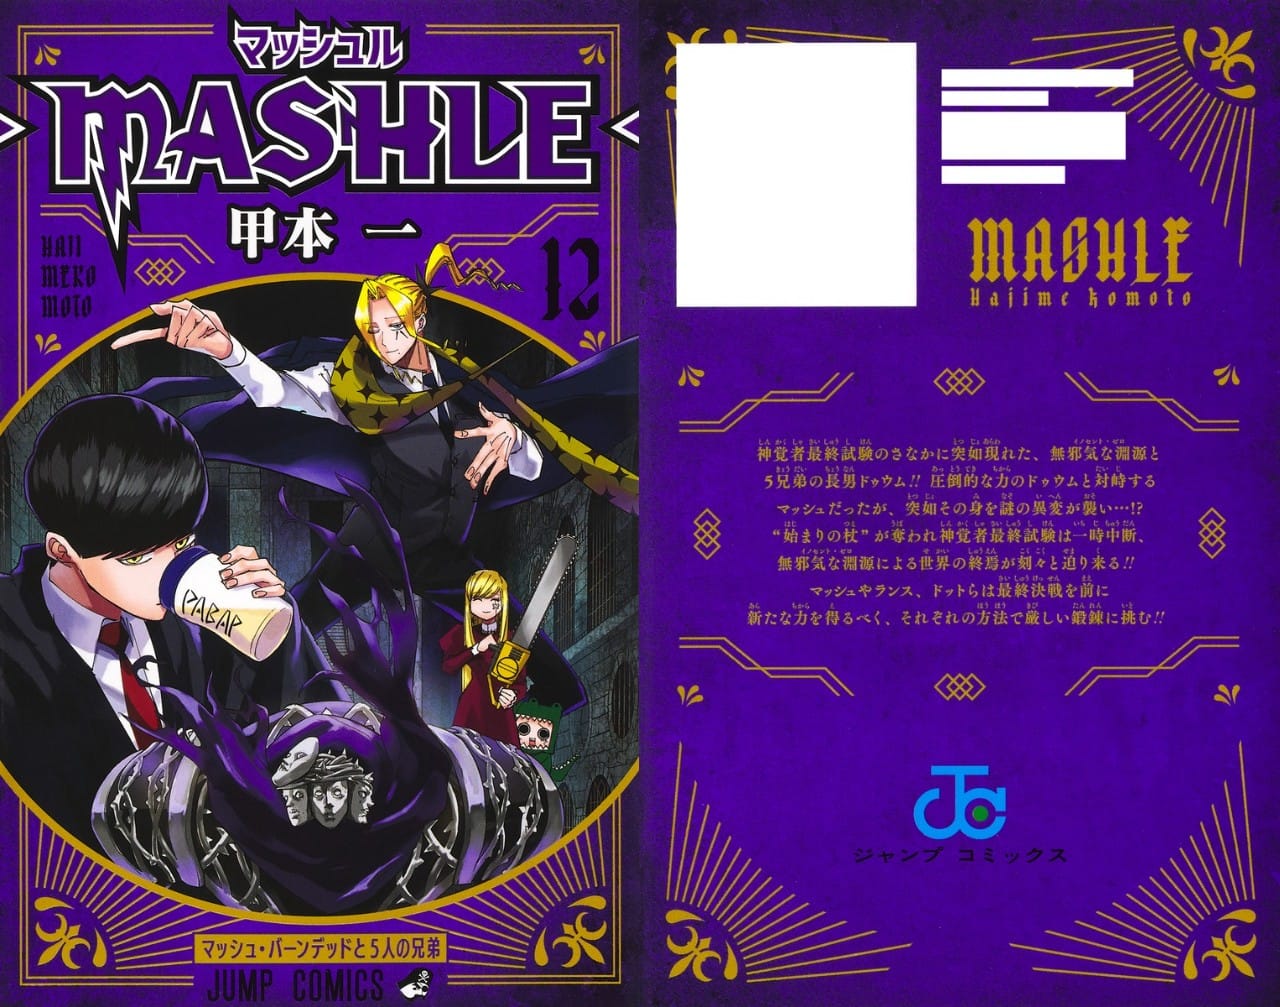 甲本一「マッシュル-MASHLE-」最新刊 第12巻 2022年7月4日発売!